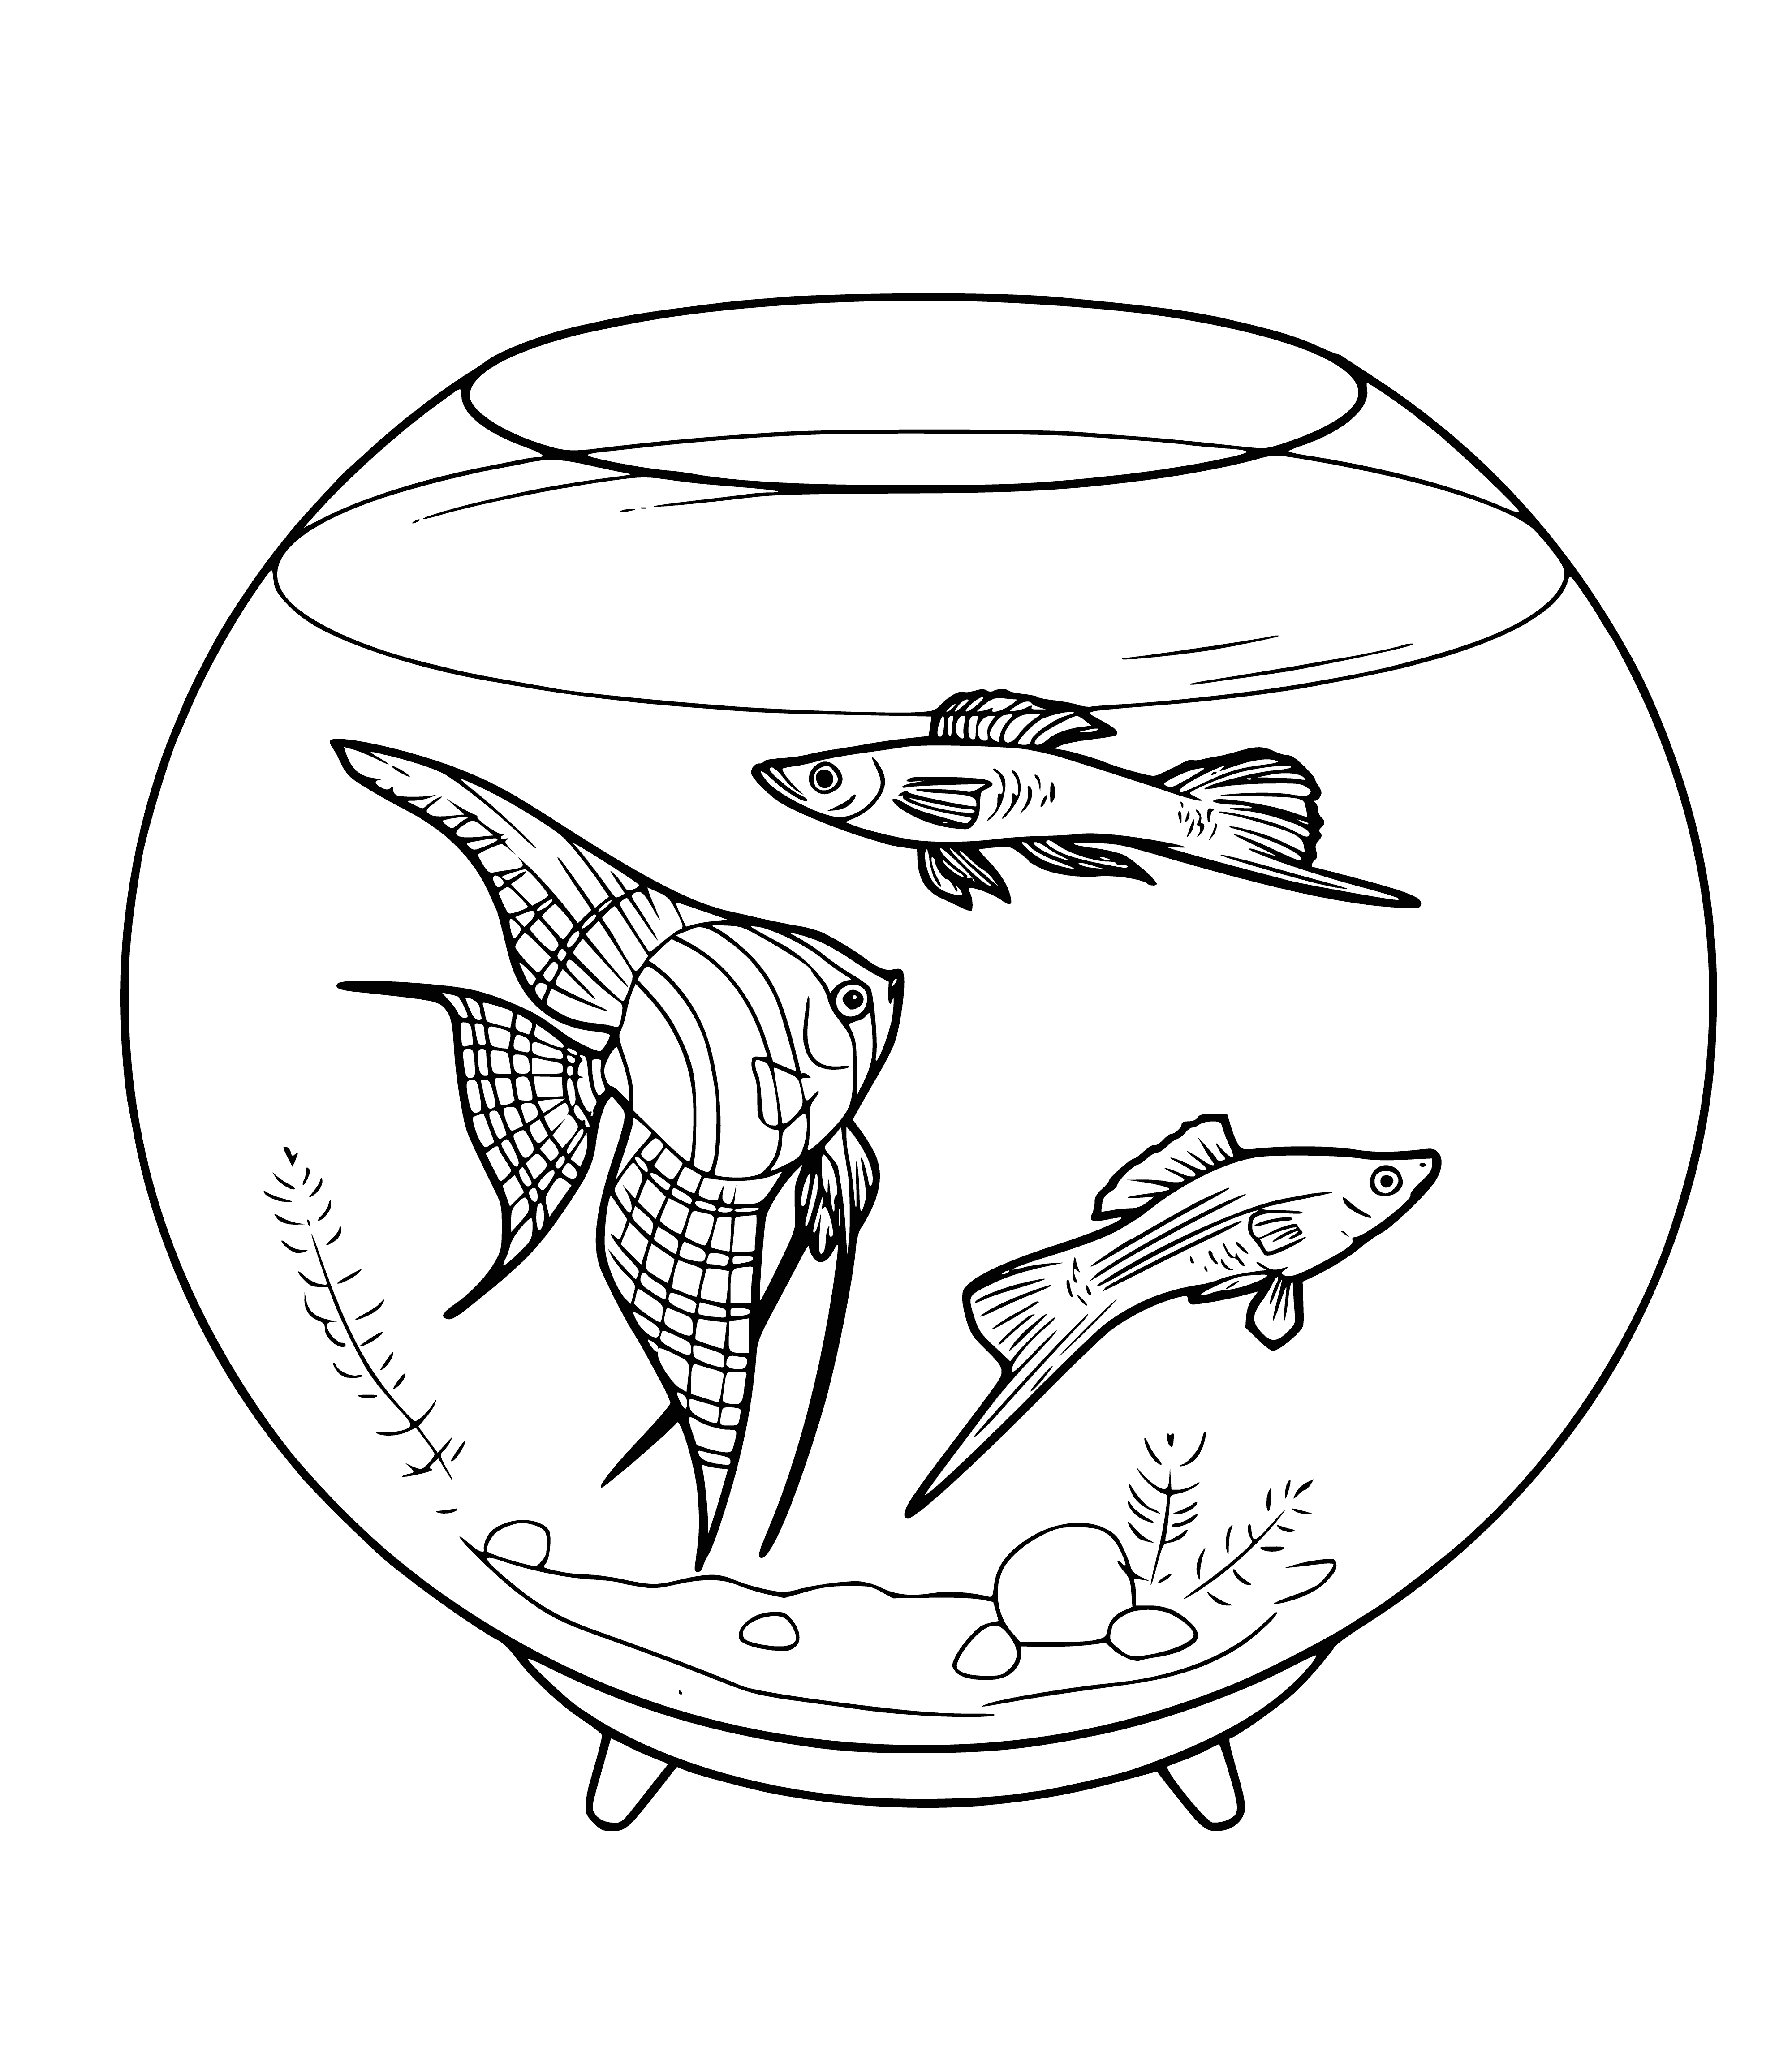 Aquarium fish coloring page